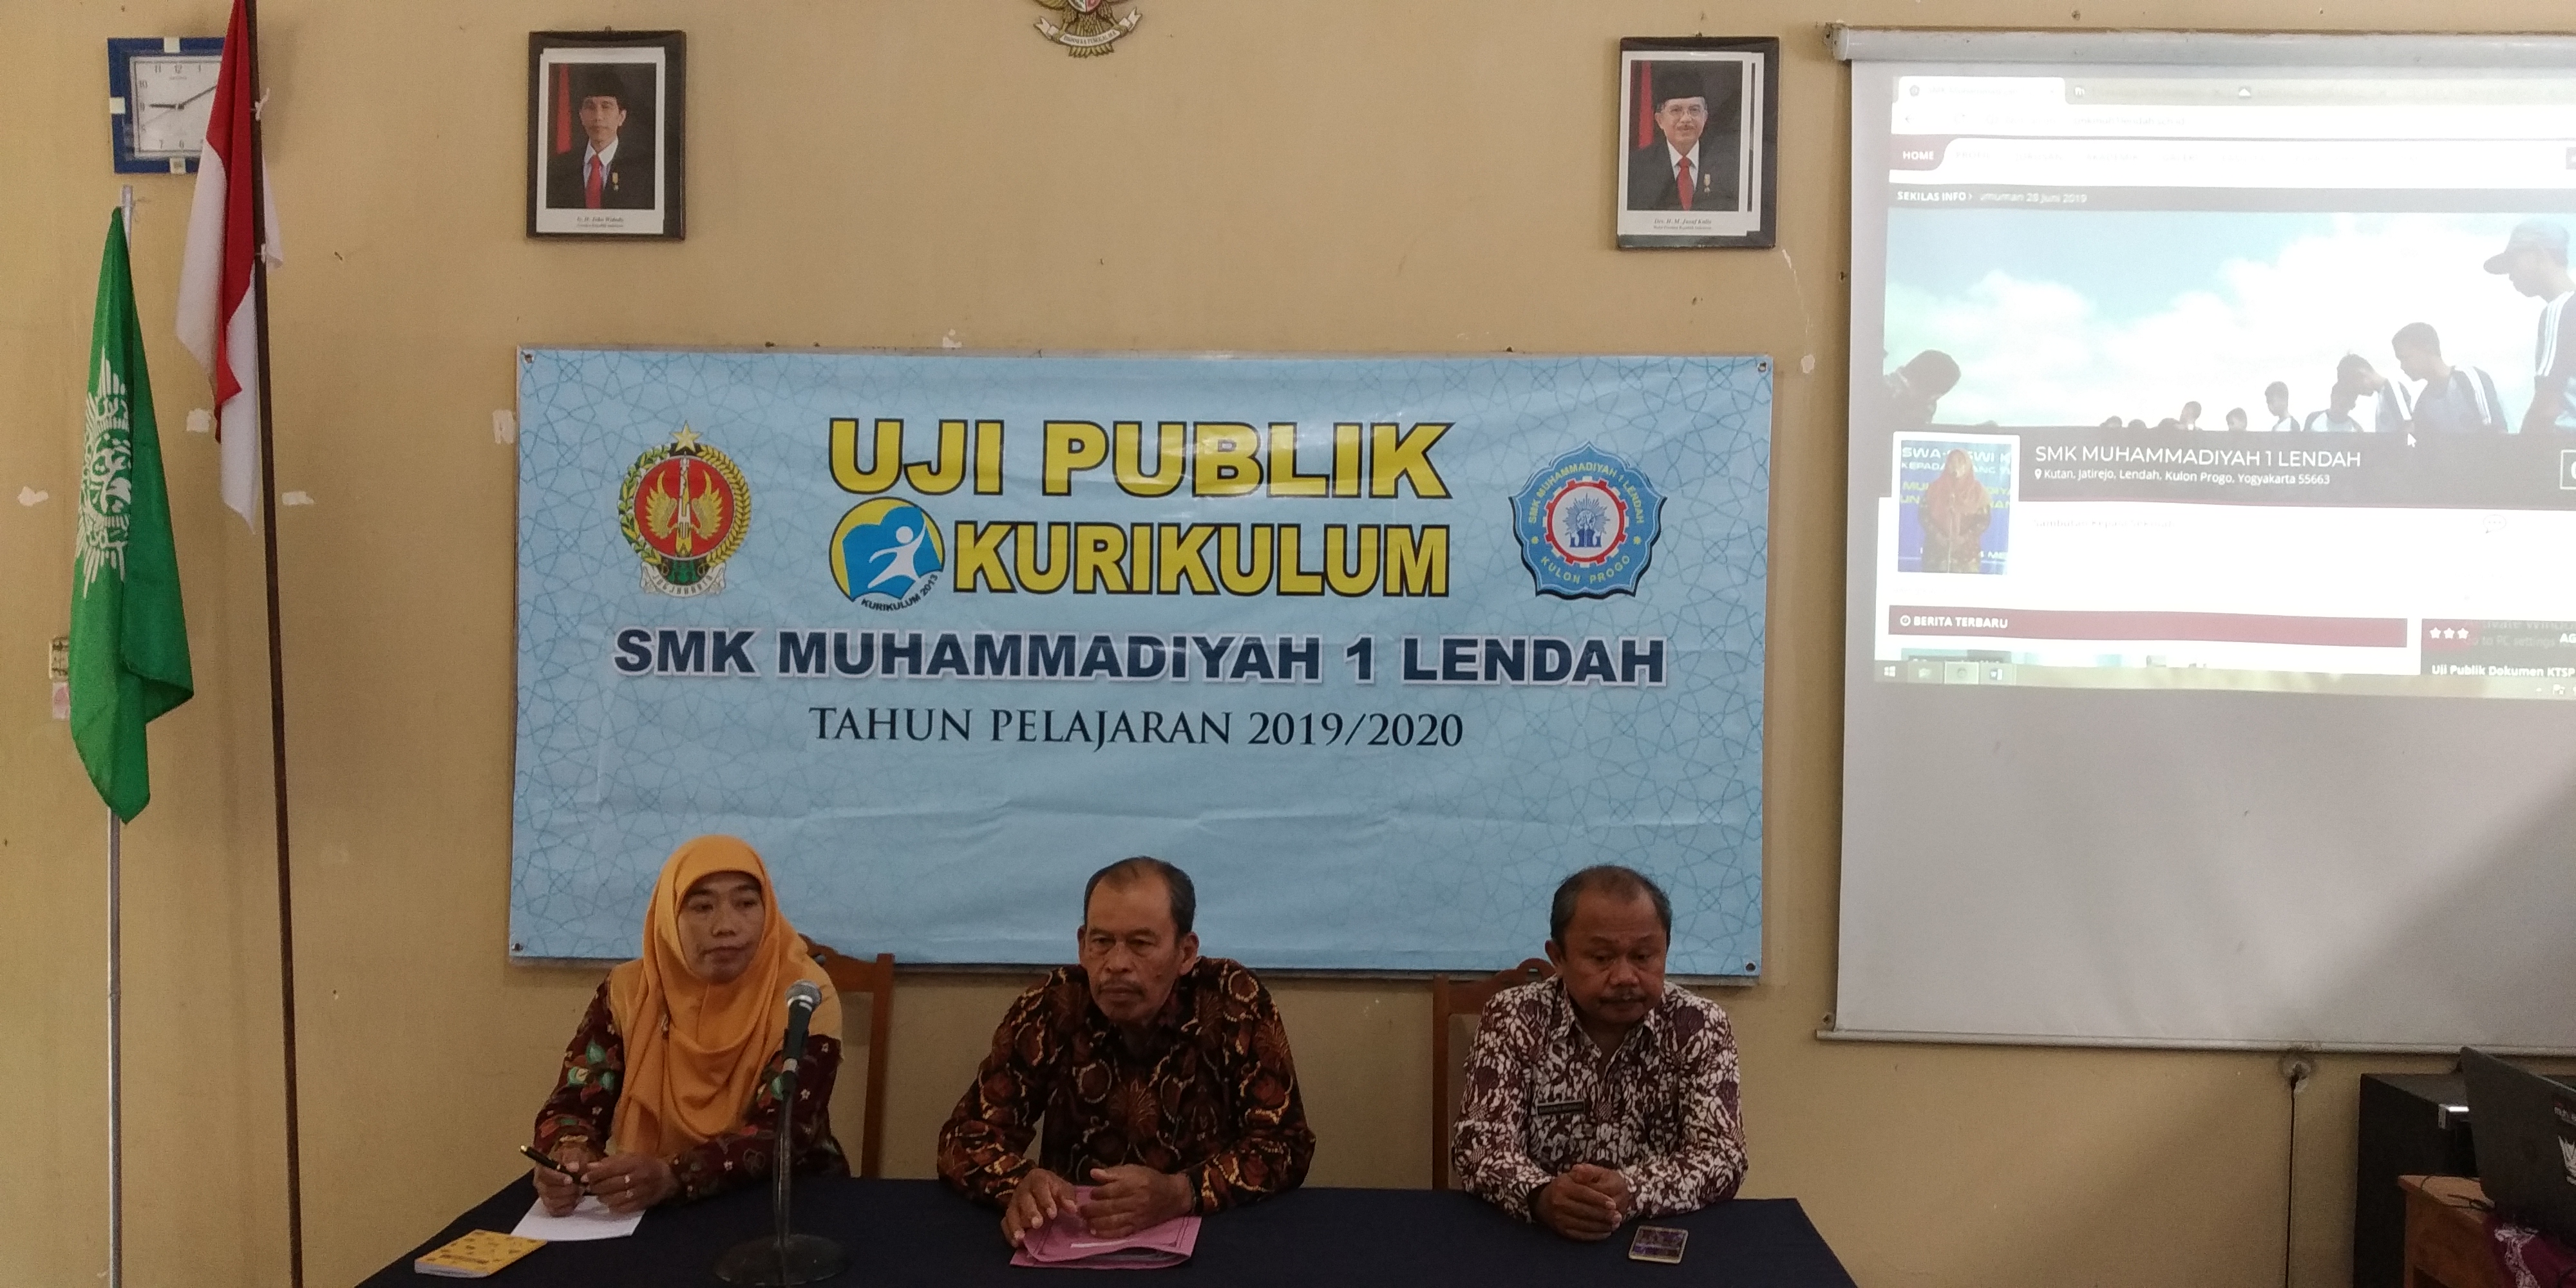 Uji Publik Kurikulum SMK Muhammadiyah 1 Lendah